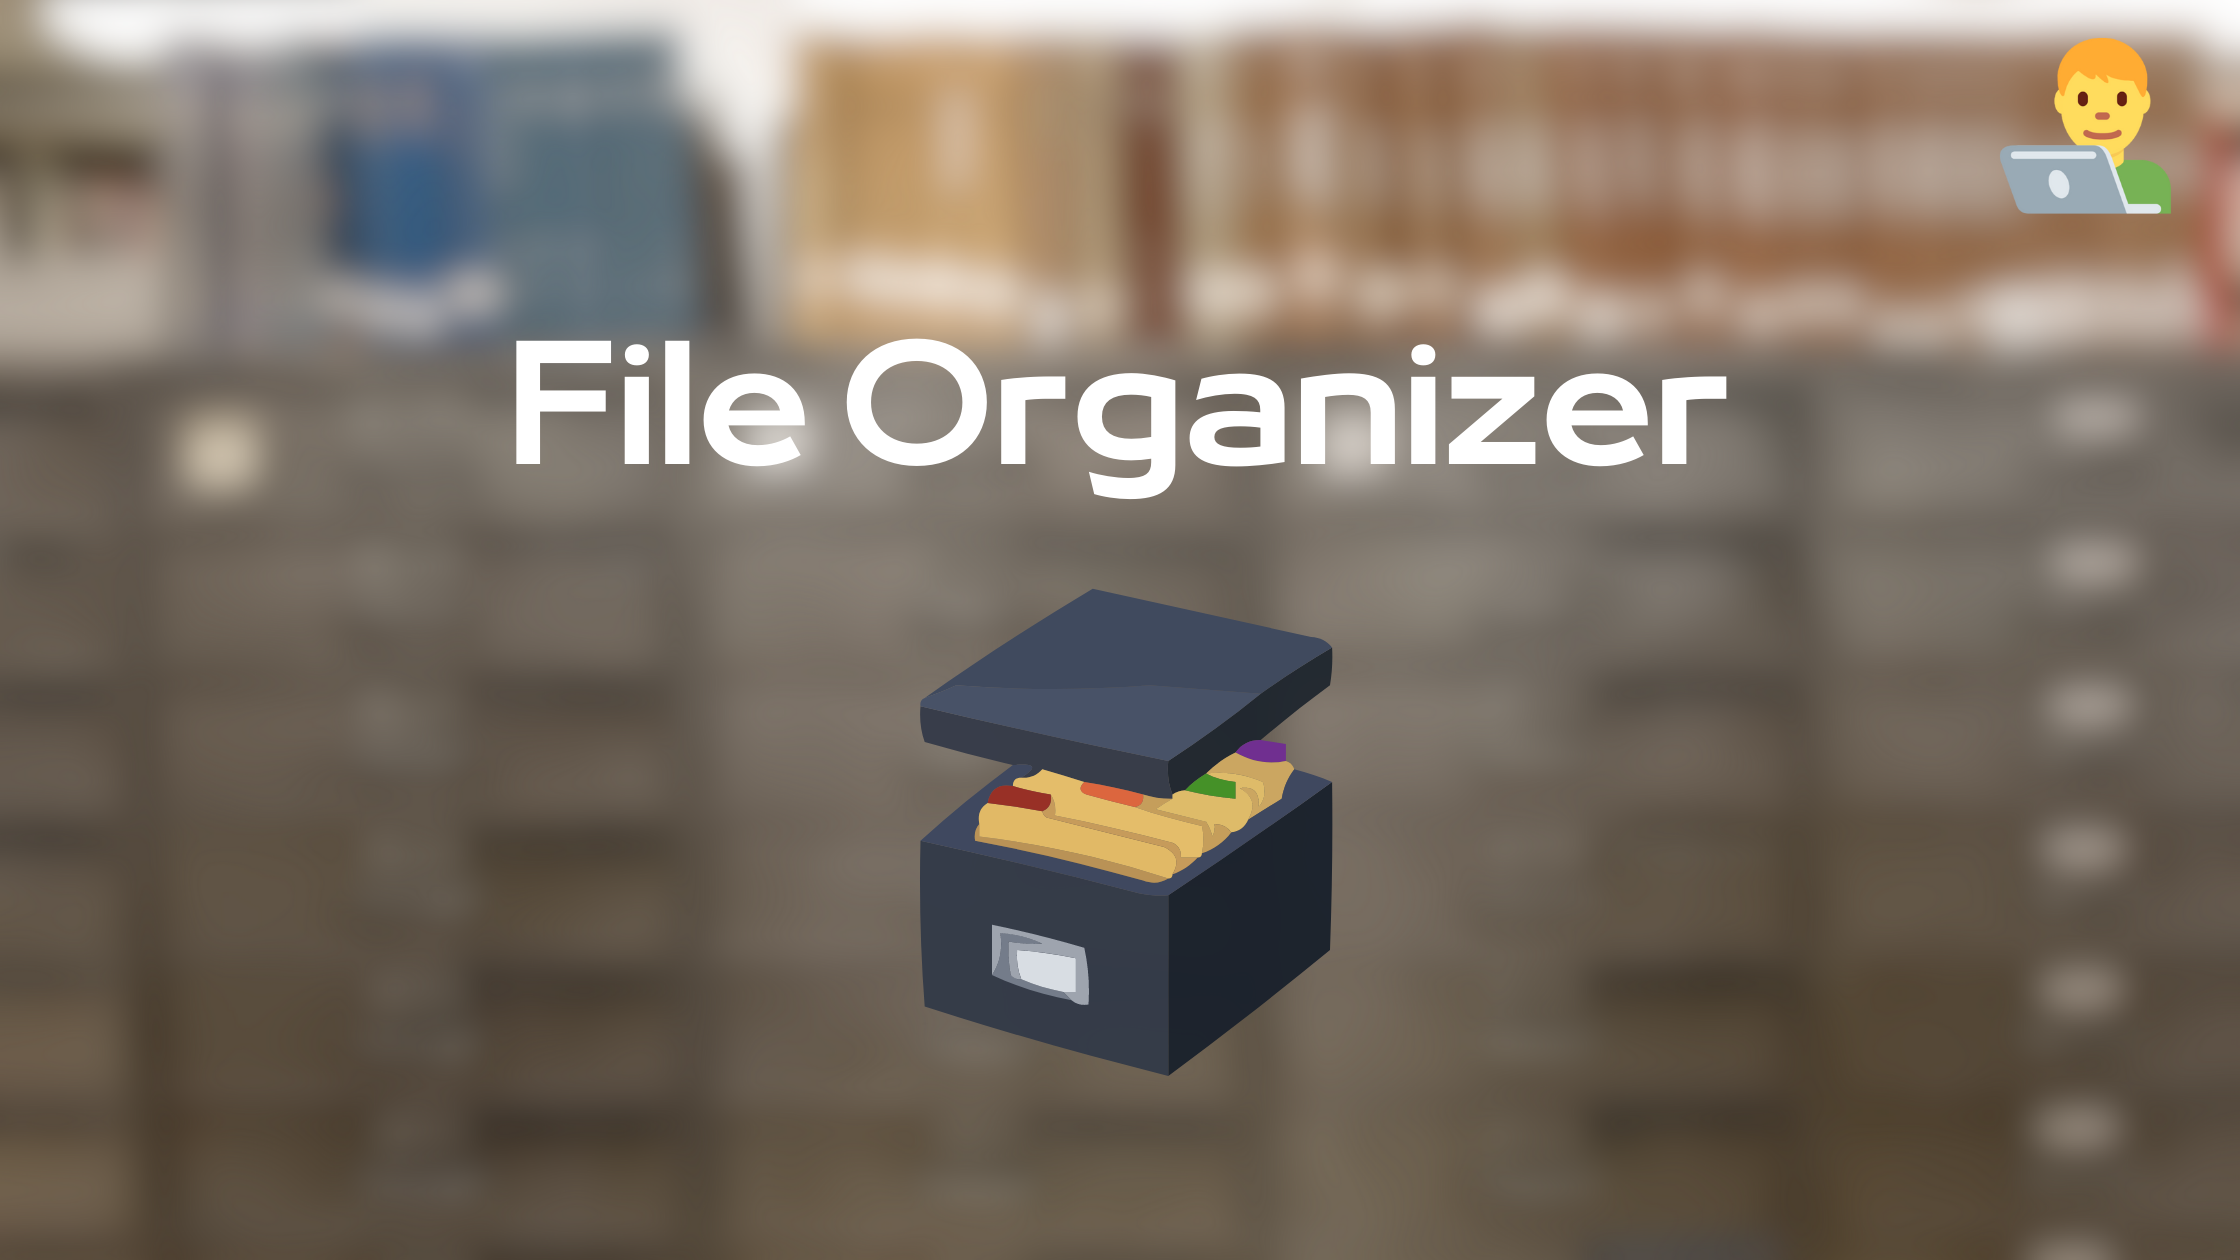 Construyendo mi Organizador de archivos: Parte 1